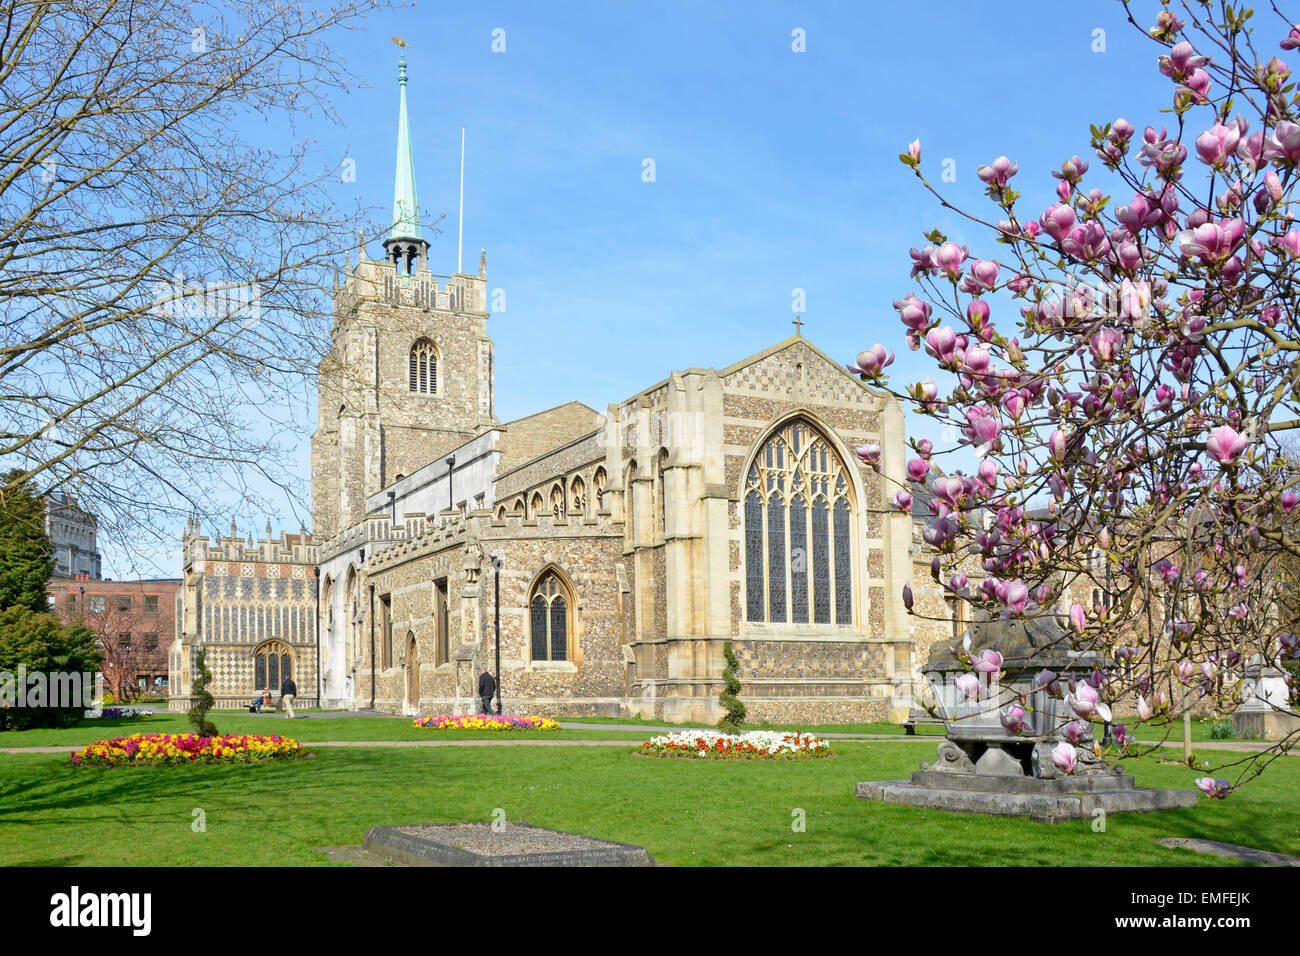 Ville de Chelmsford style gothique Cathédrale anglicane église tour et cuivre vert spire pierre sarcophage dans le cimetière derrière Magnolia Essex Angleterre Royaume-Uni Banque D'Images